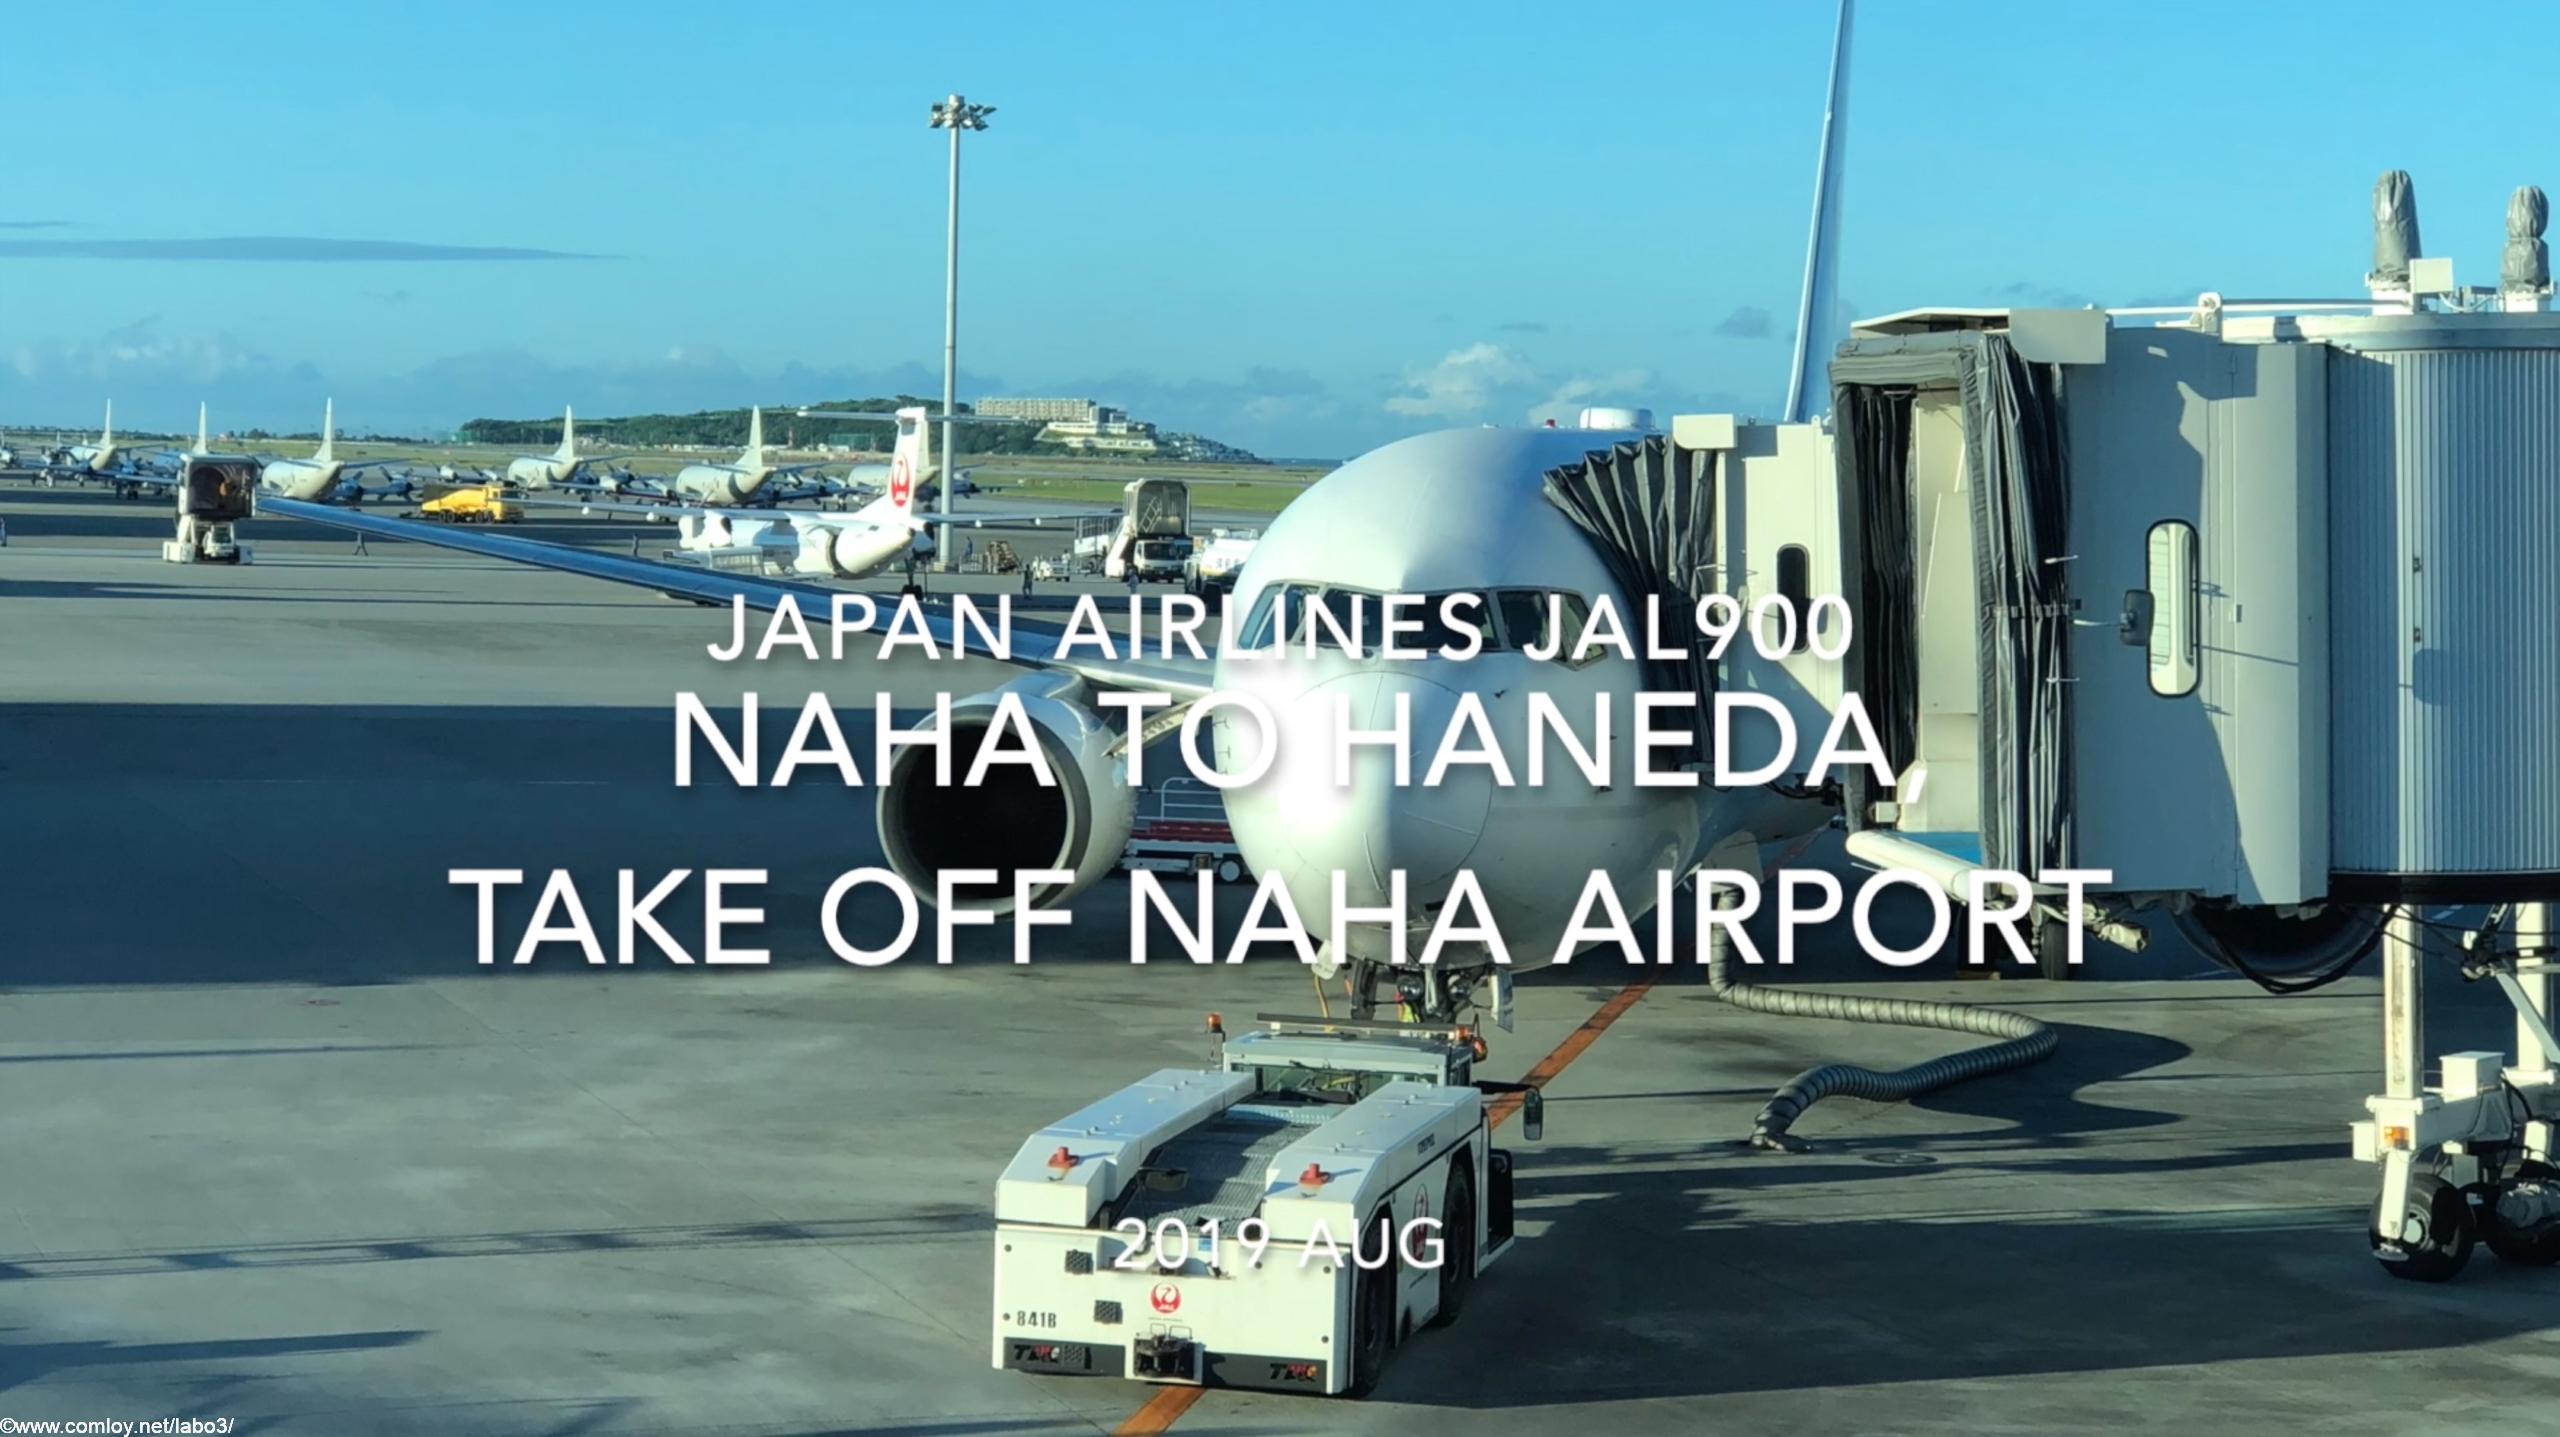 【機内から離着陸映像】2019 AUG Japan airlines JAL900 NAHA to HANEDA, Take off NAHA Airport